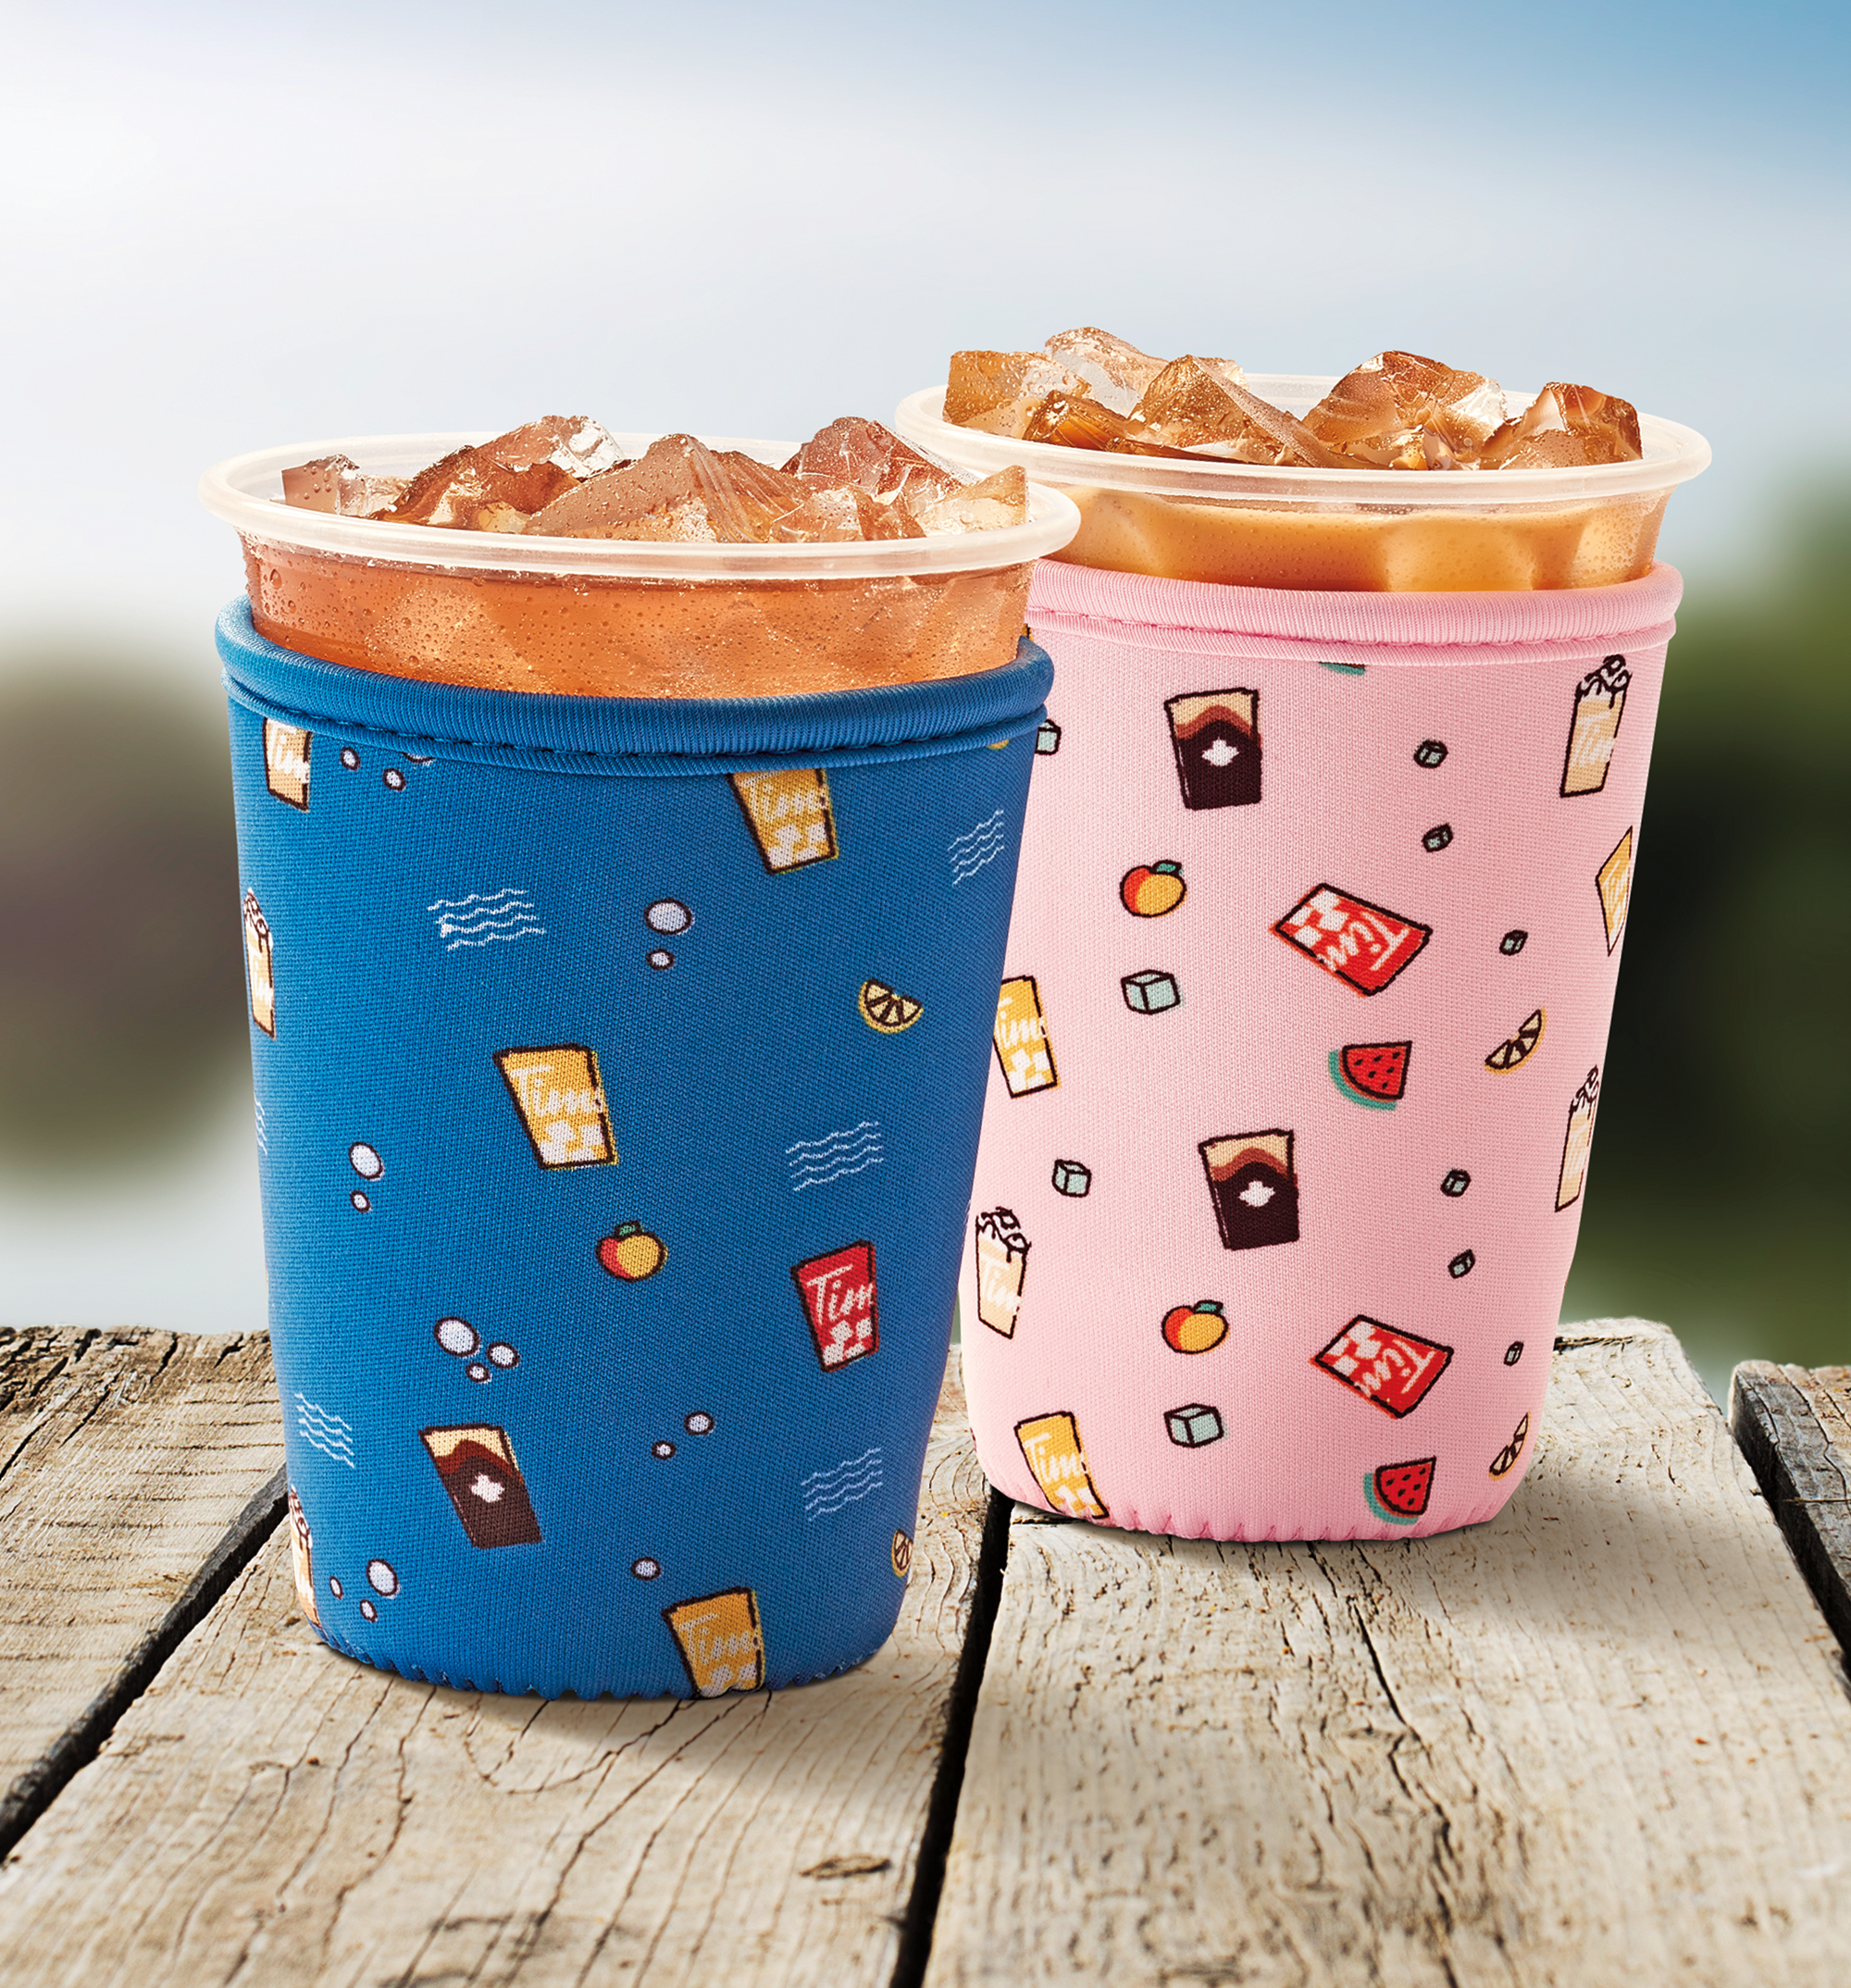 Procurez-vous un coussin flottant cappuccino glacé et une housse festive pour boissons Tim de notre NOUVELLE collection Bonheurs d'été